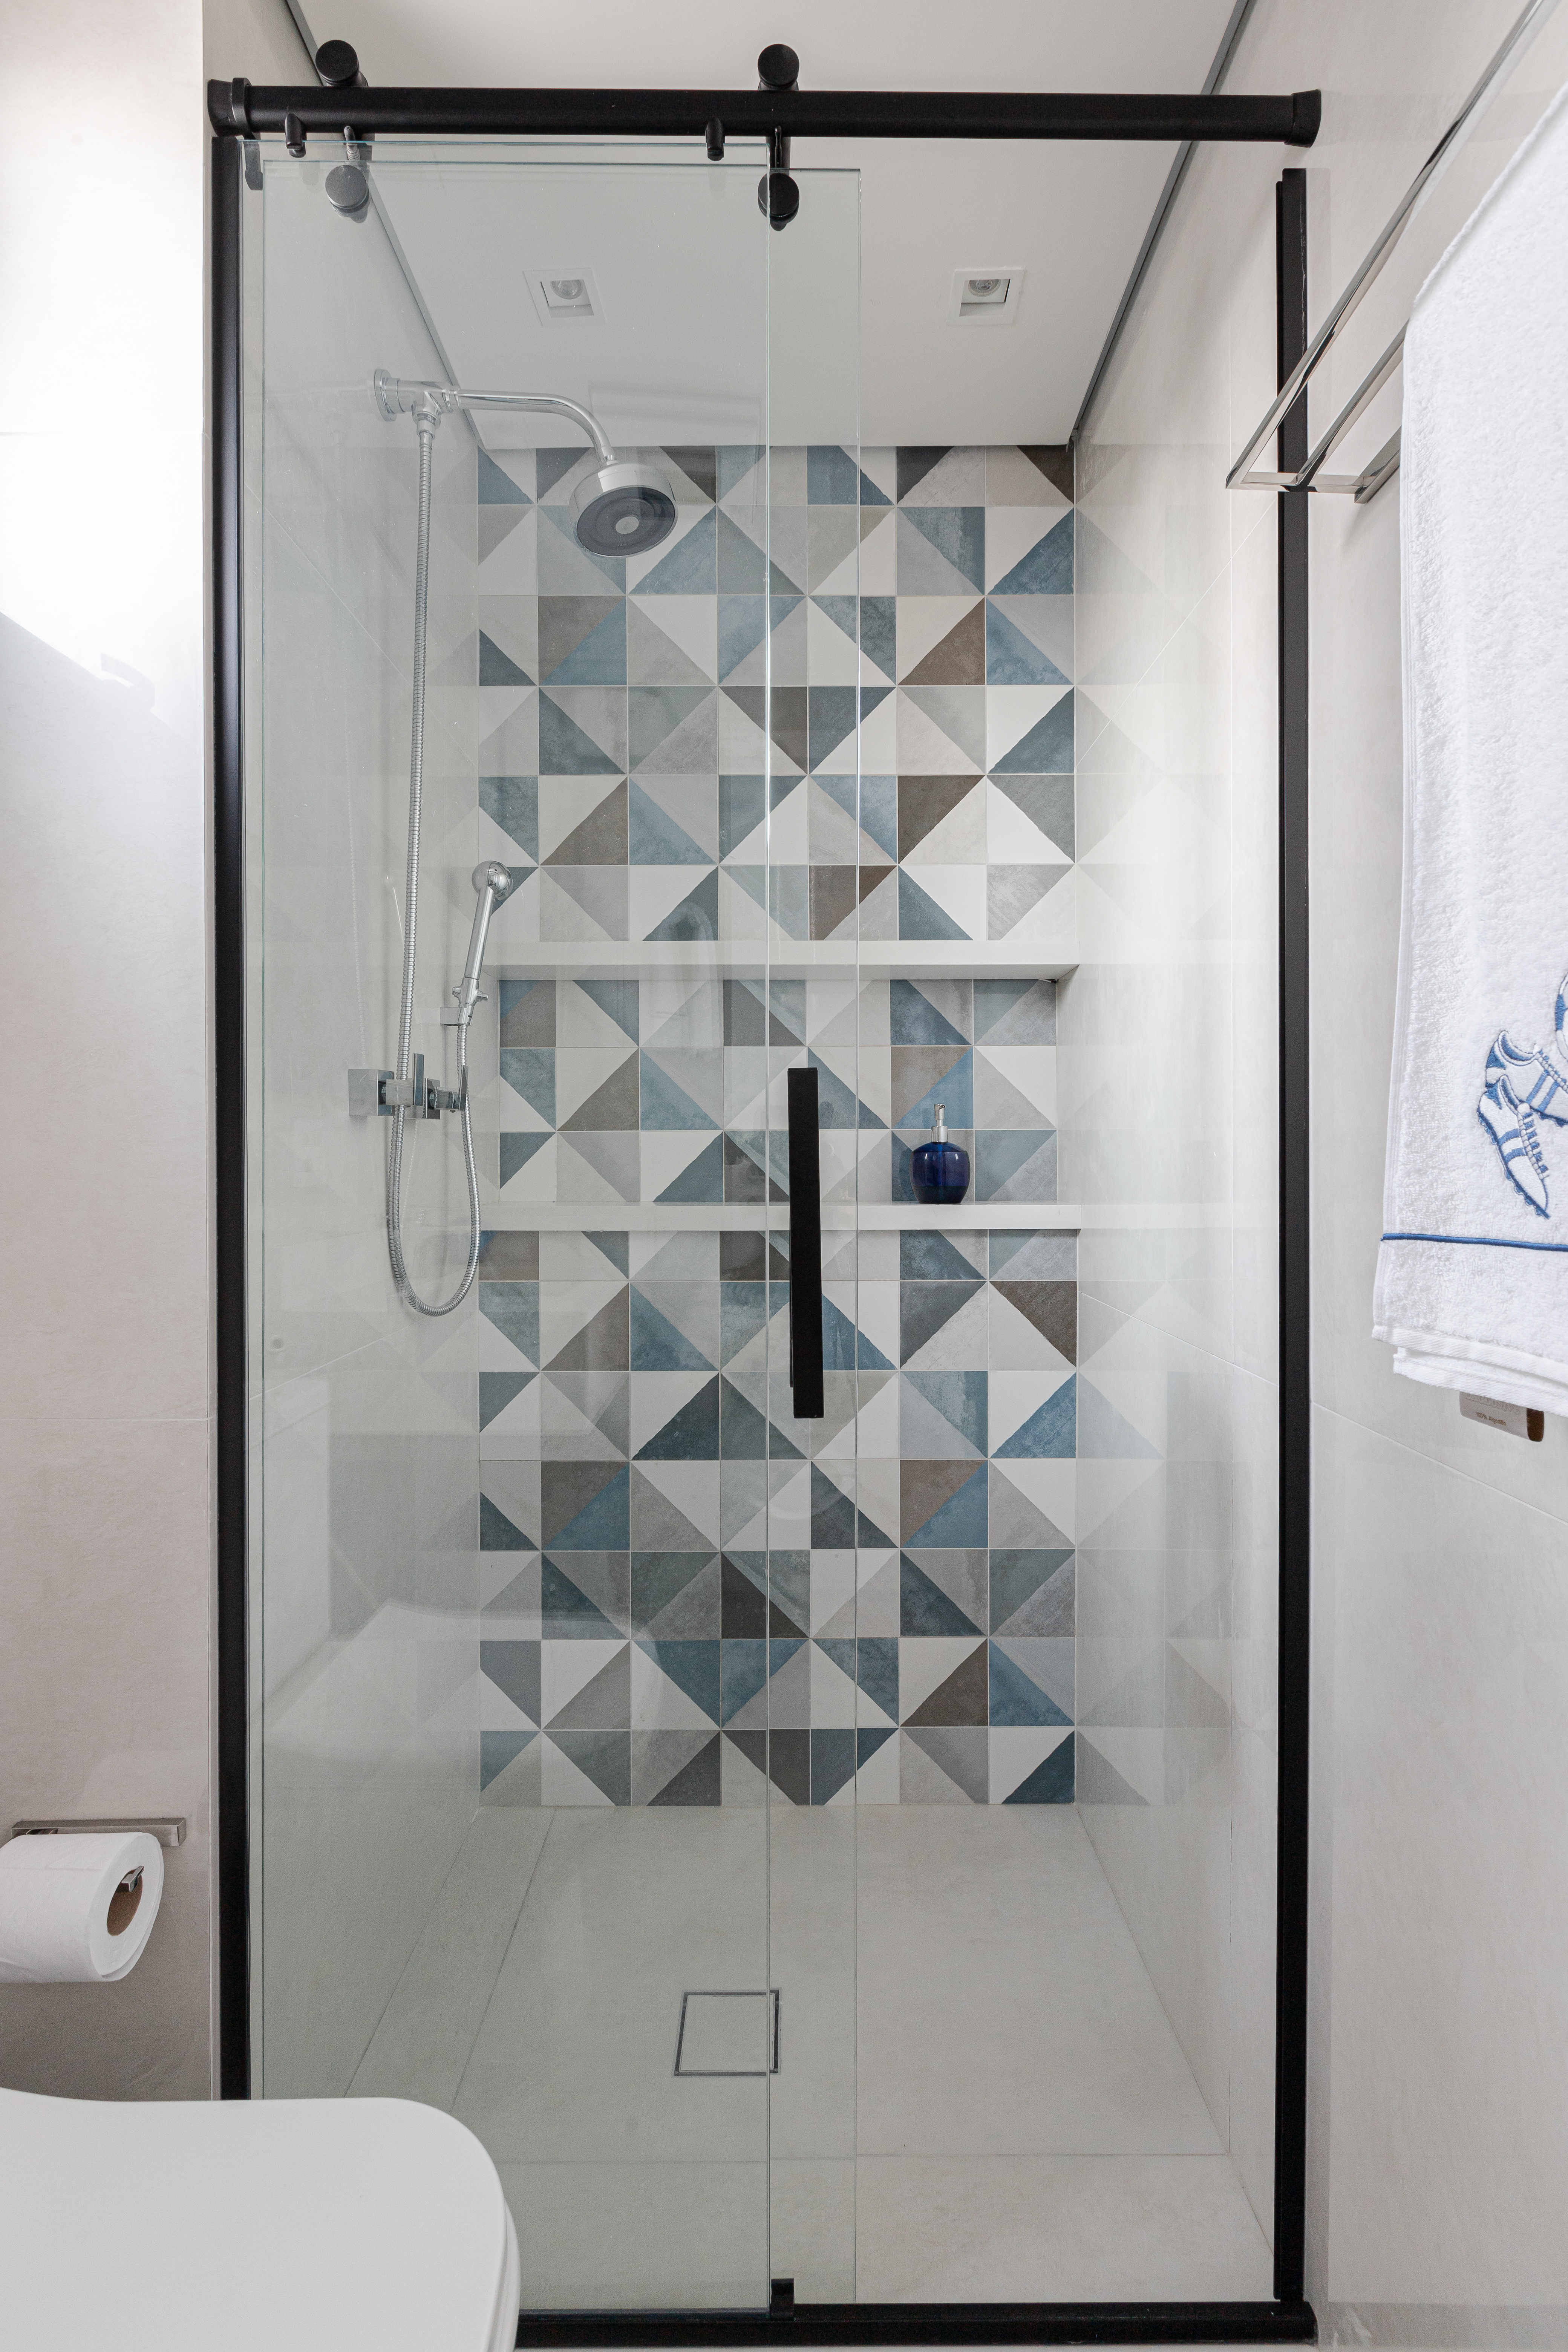 Reforma em apê de 140m² transforma banheiro em biblioteca de home office. Projeto de Blaia e Moura Arquitetos. Na foto, banheiro com azulejos geométricos coloridos.